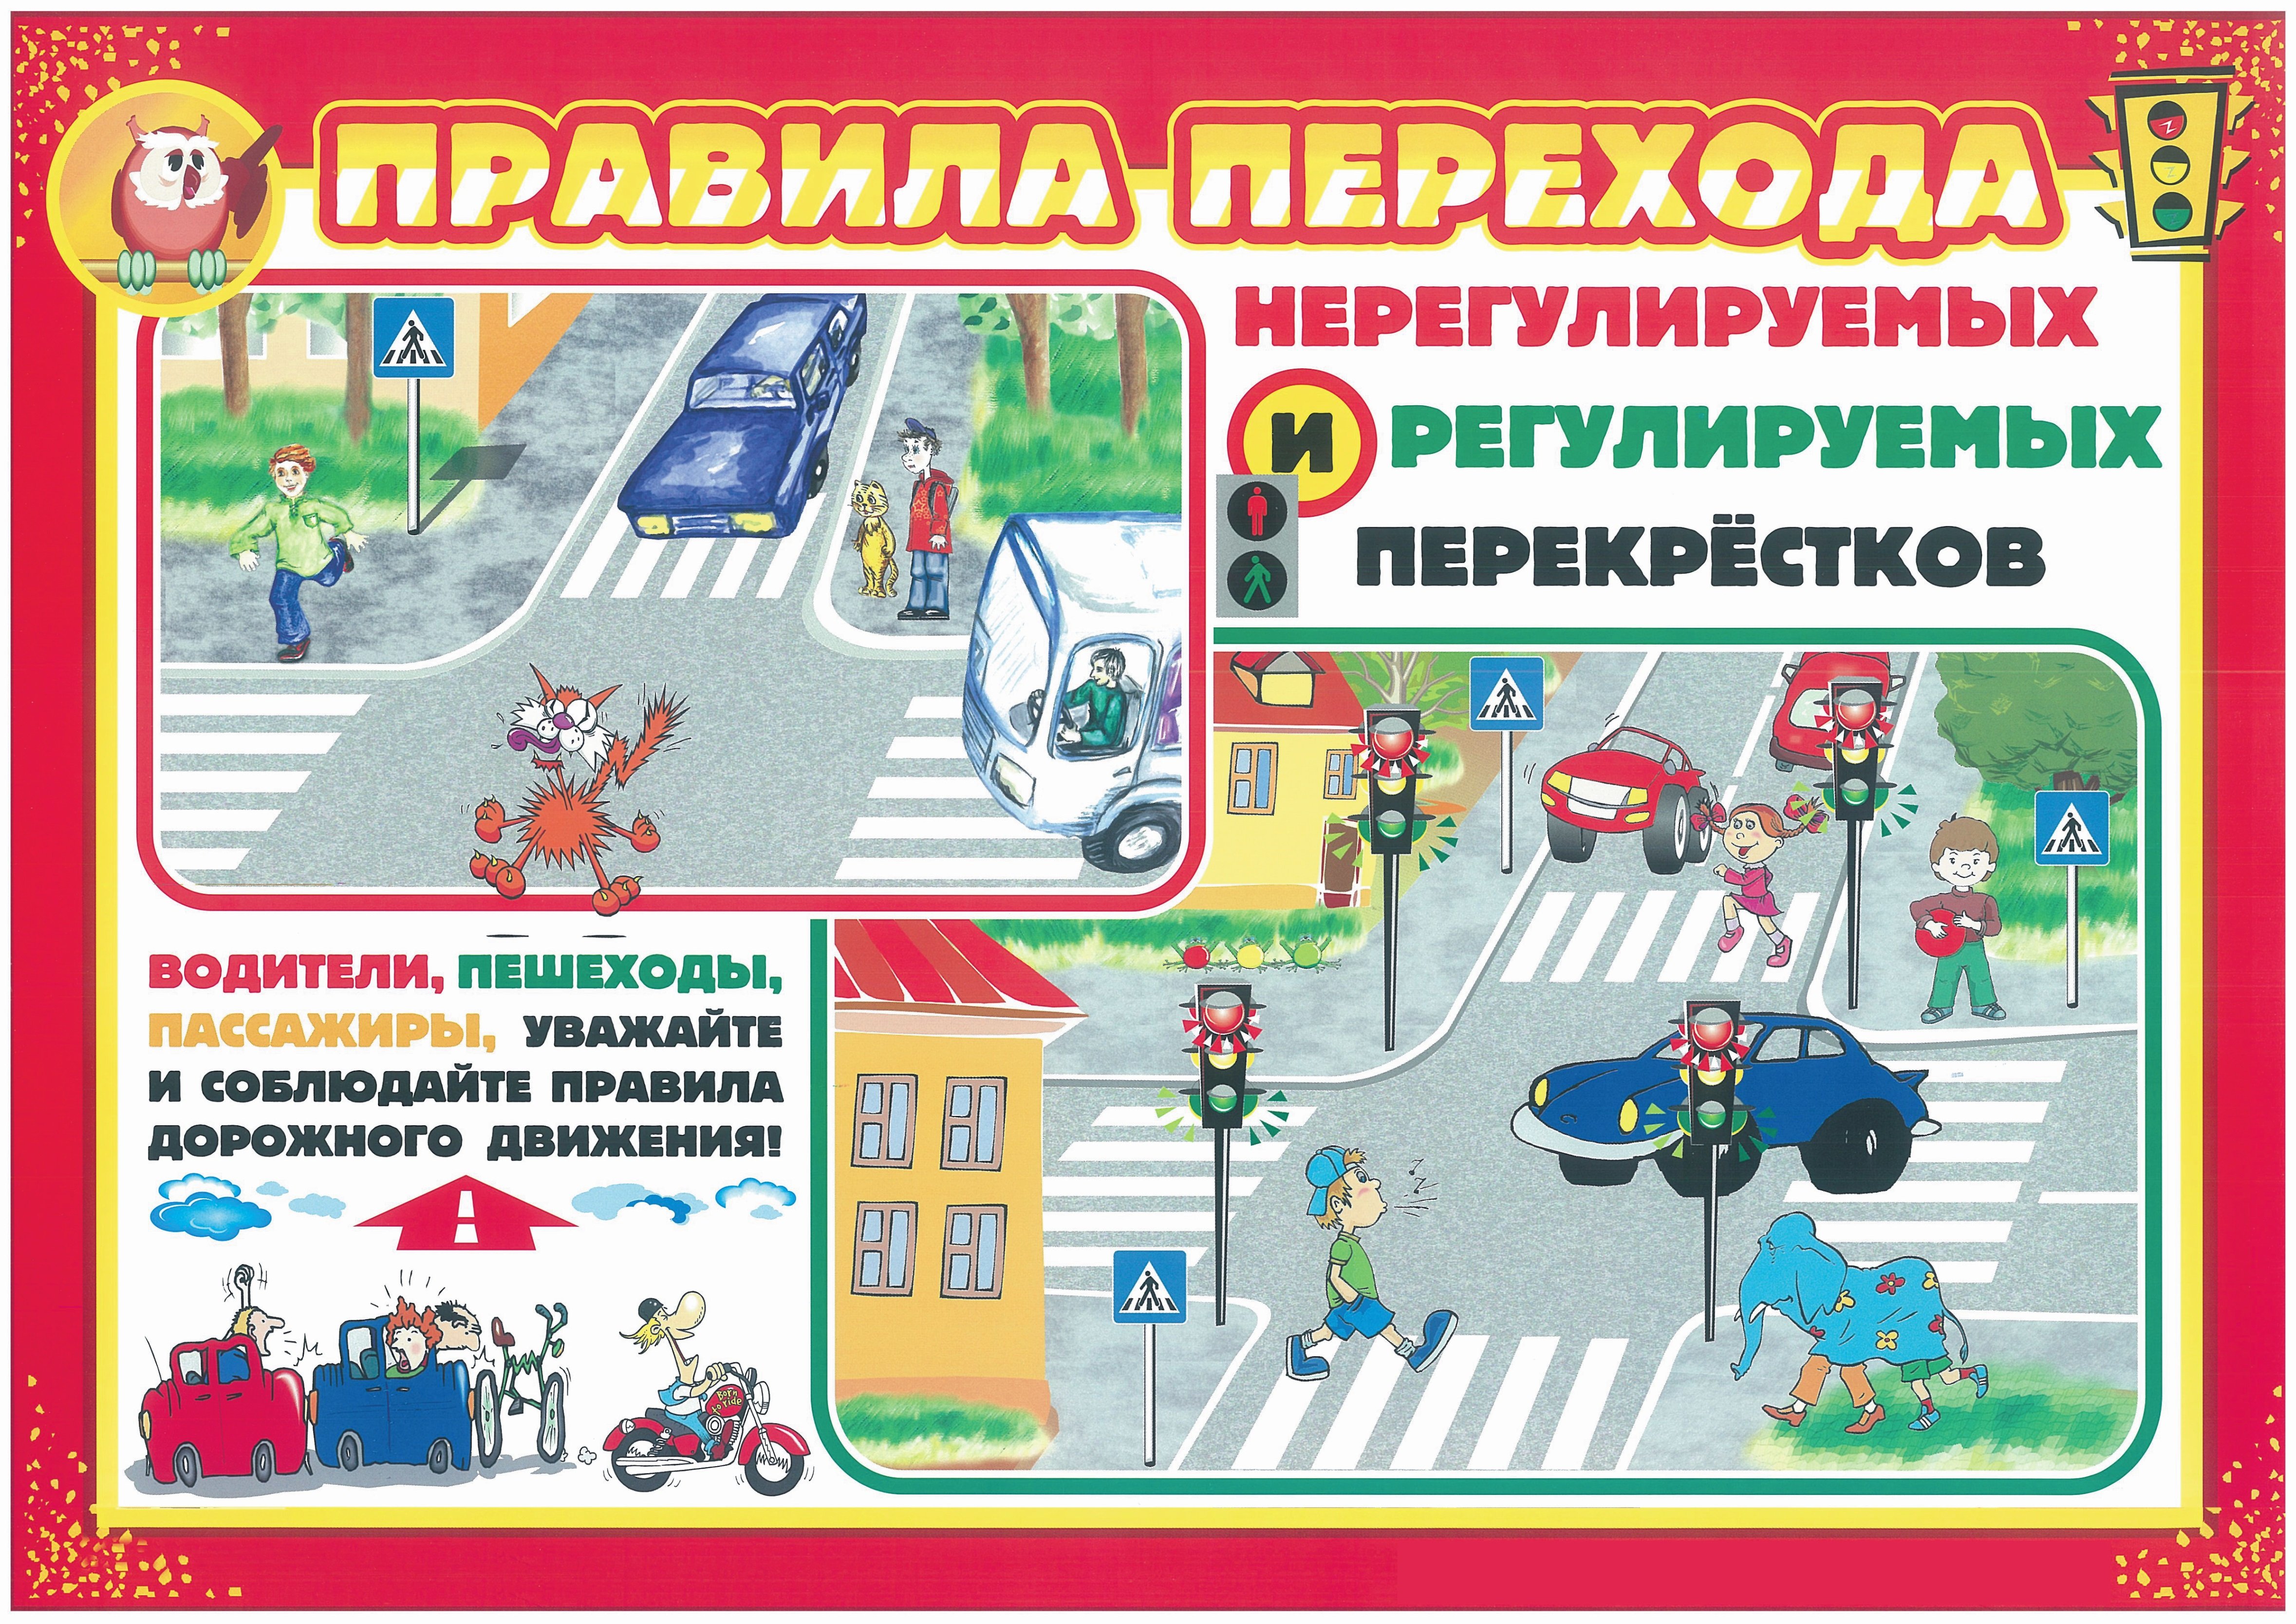 Обеспечивает безопасность на дороге. Правила дорожного движения. Правила дорожного движения для детей. Безопасность на дороге для дошкольников. Плакат по правилам дорожного движения.